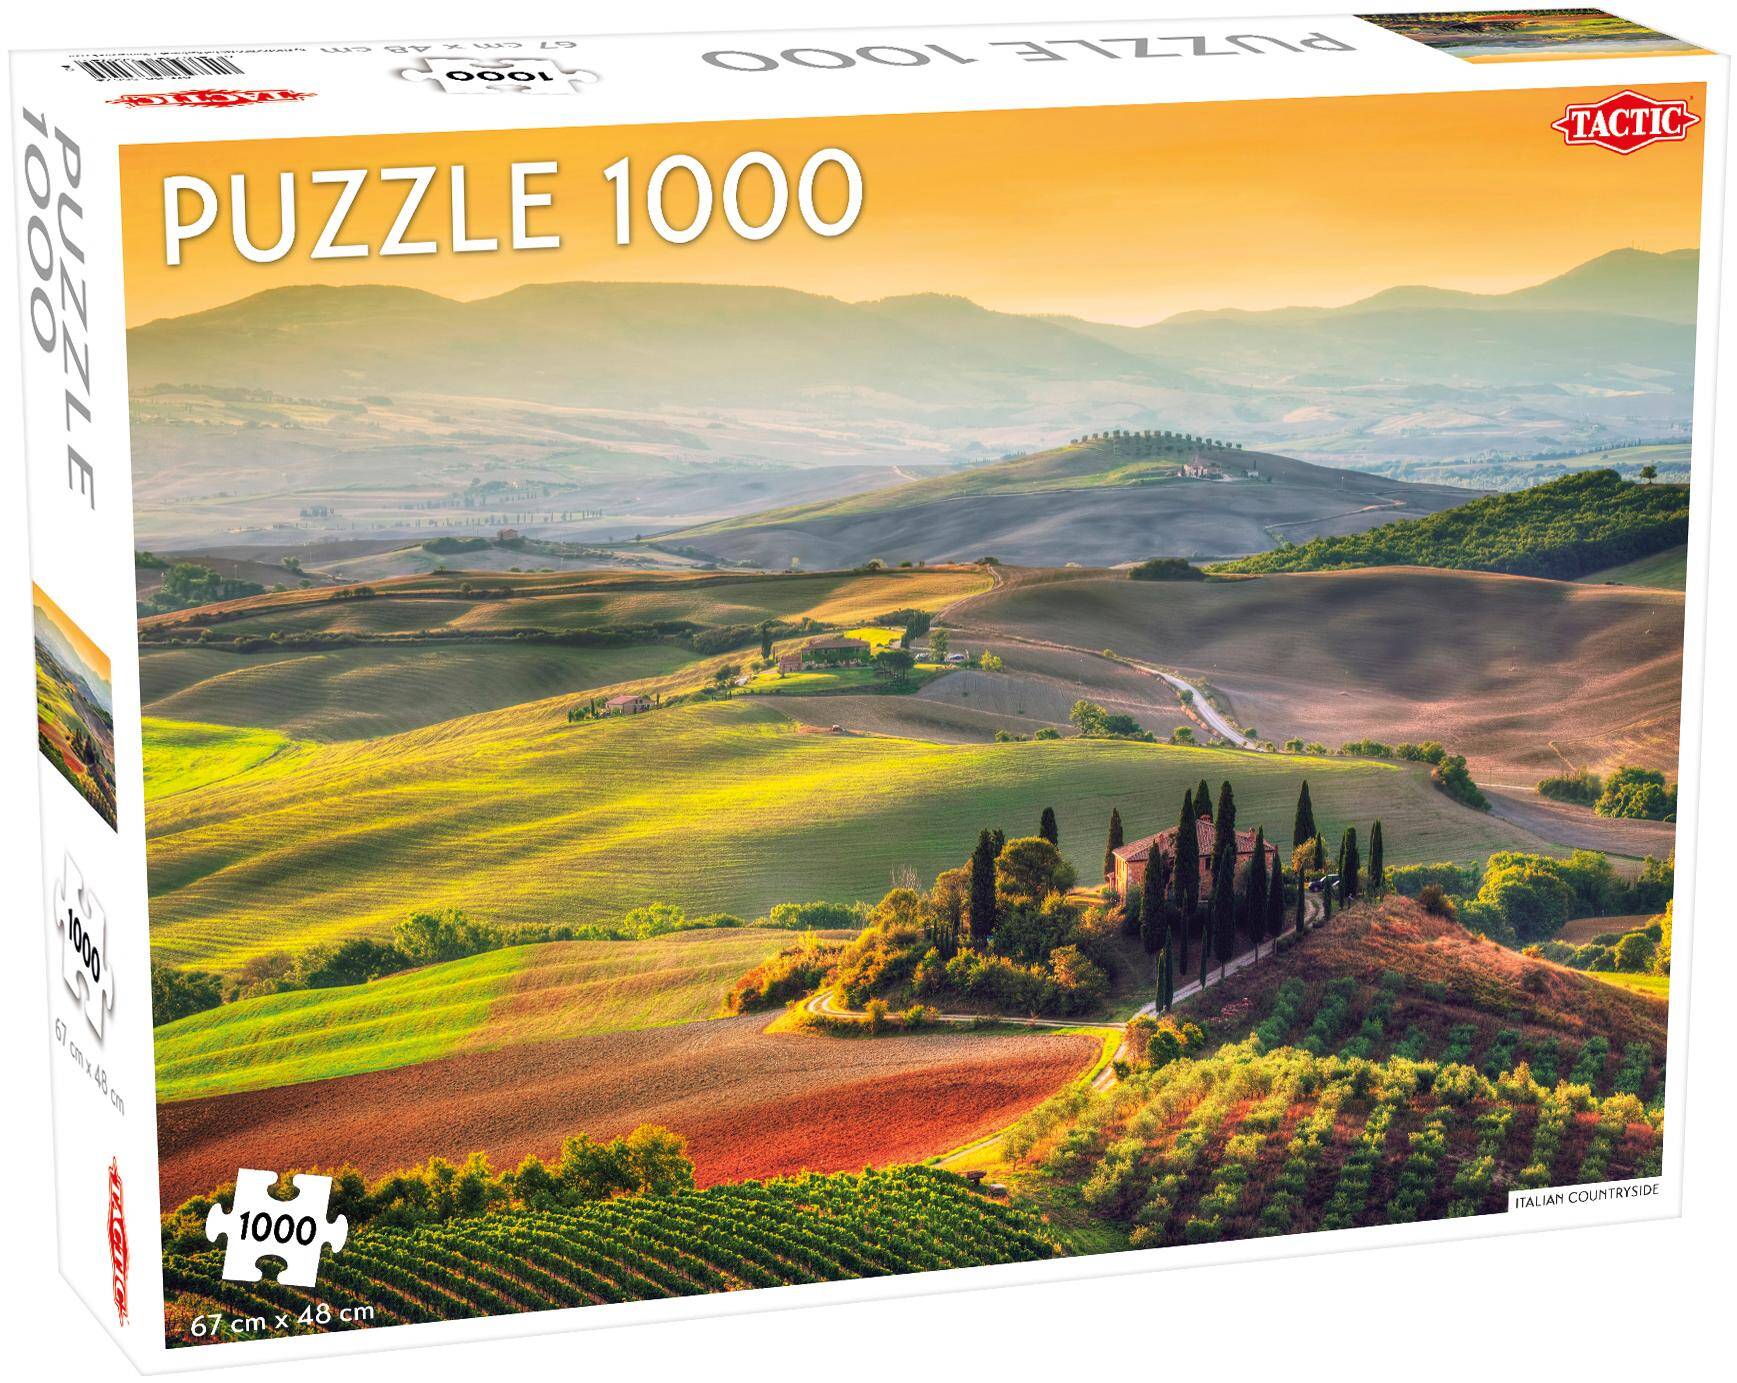 Puzzle 1000 Landscape Italian Countryside Tuscany